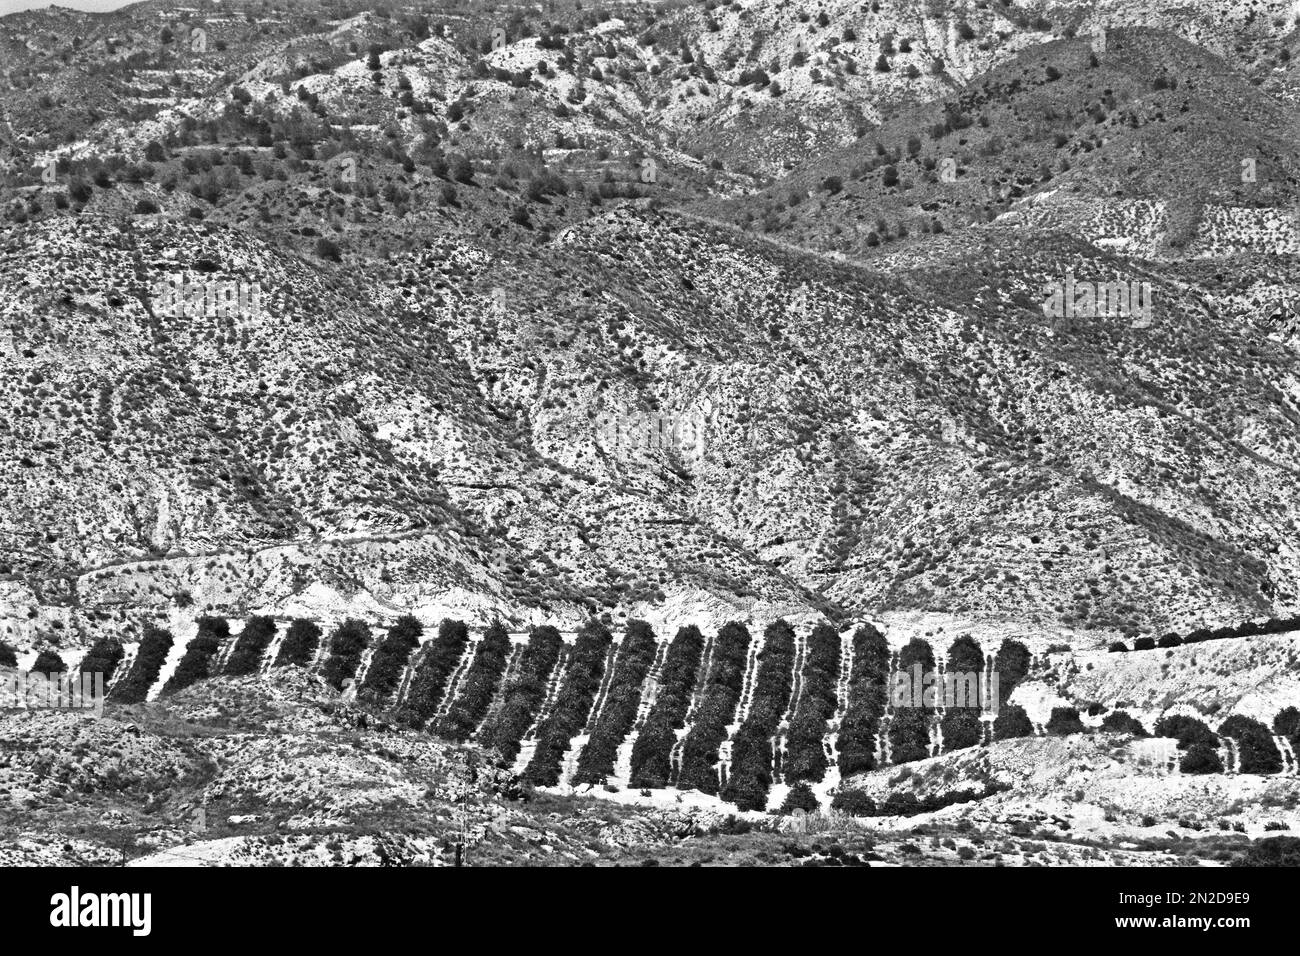 Paysage montagneux avec plantation d'orange, Andalousie, Espagne Banque D'Images